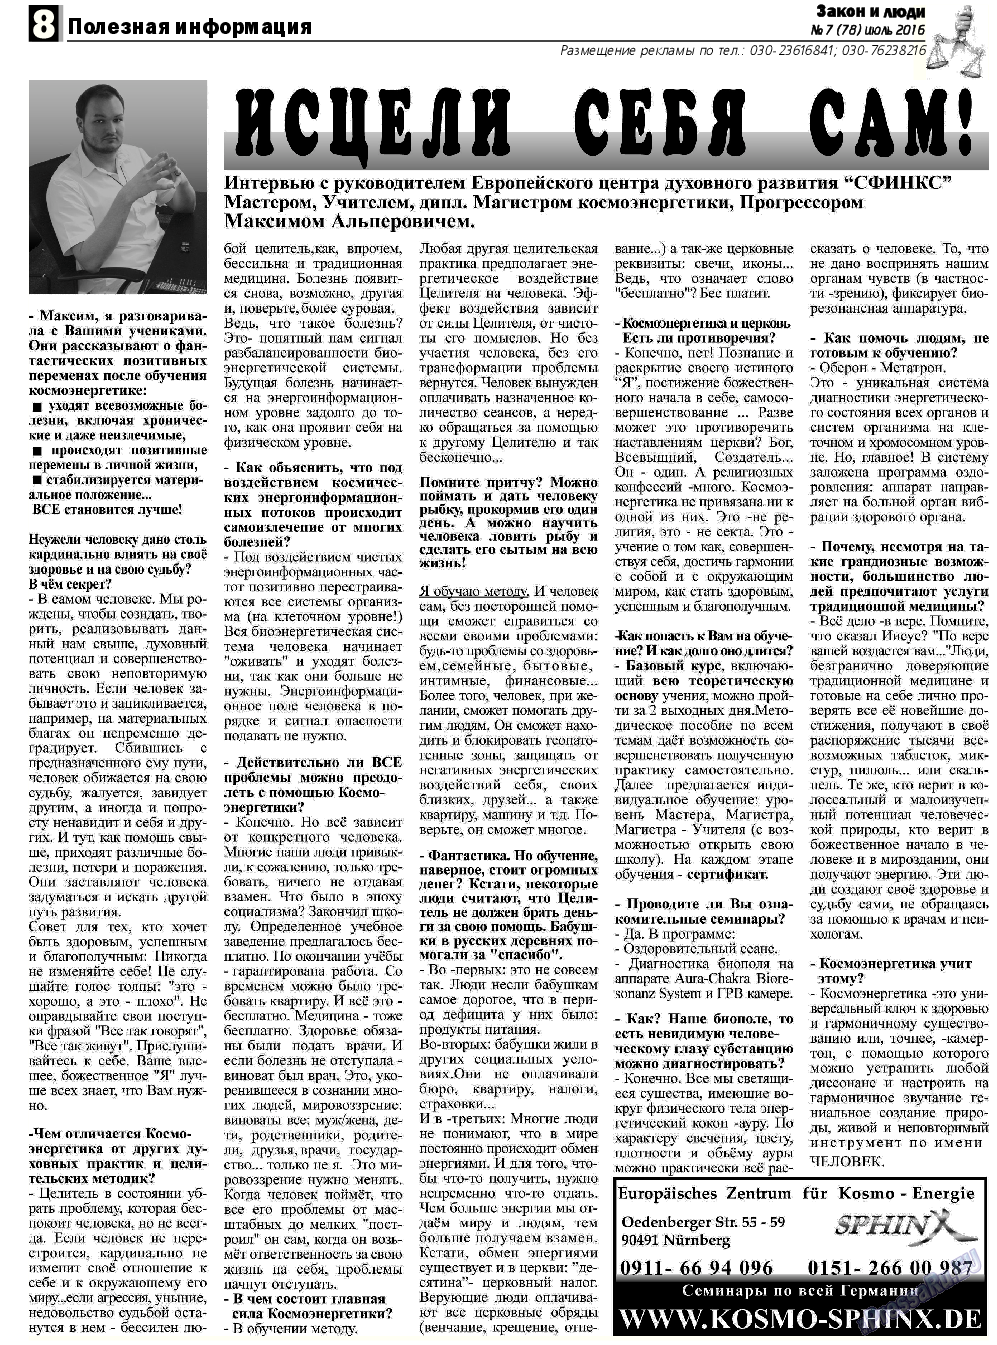 Закон и люди, газета. 2016 №7 стр.8